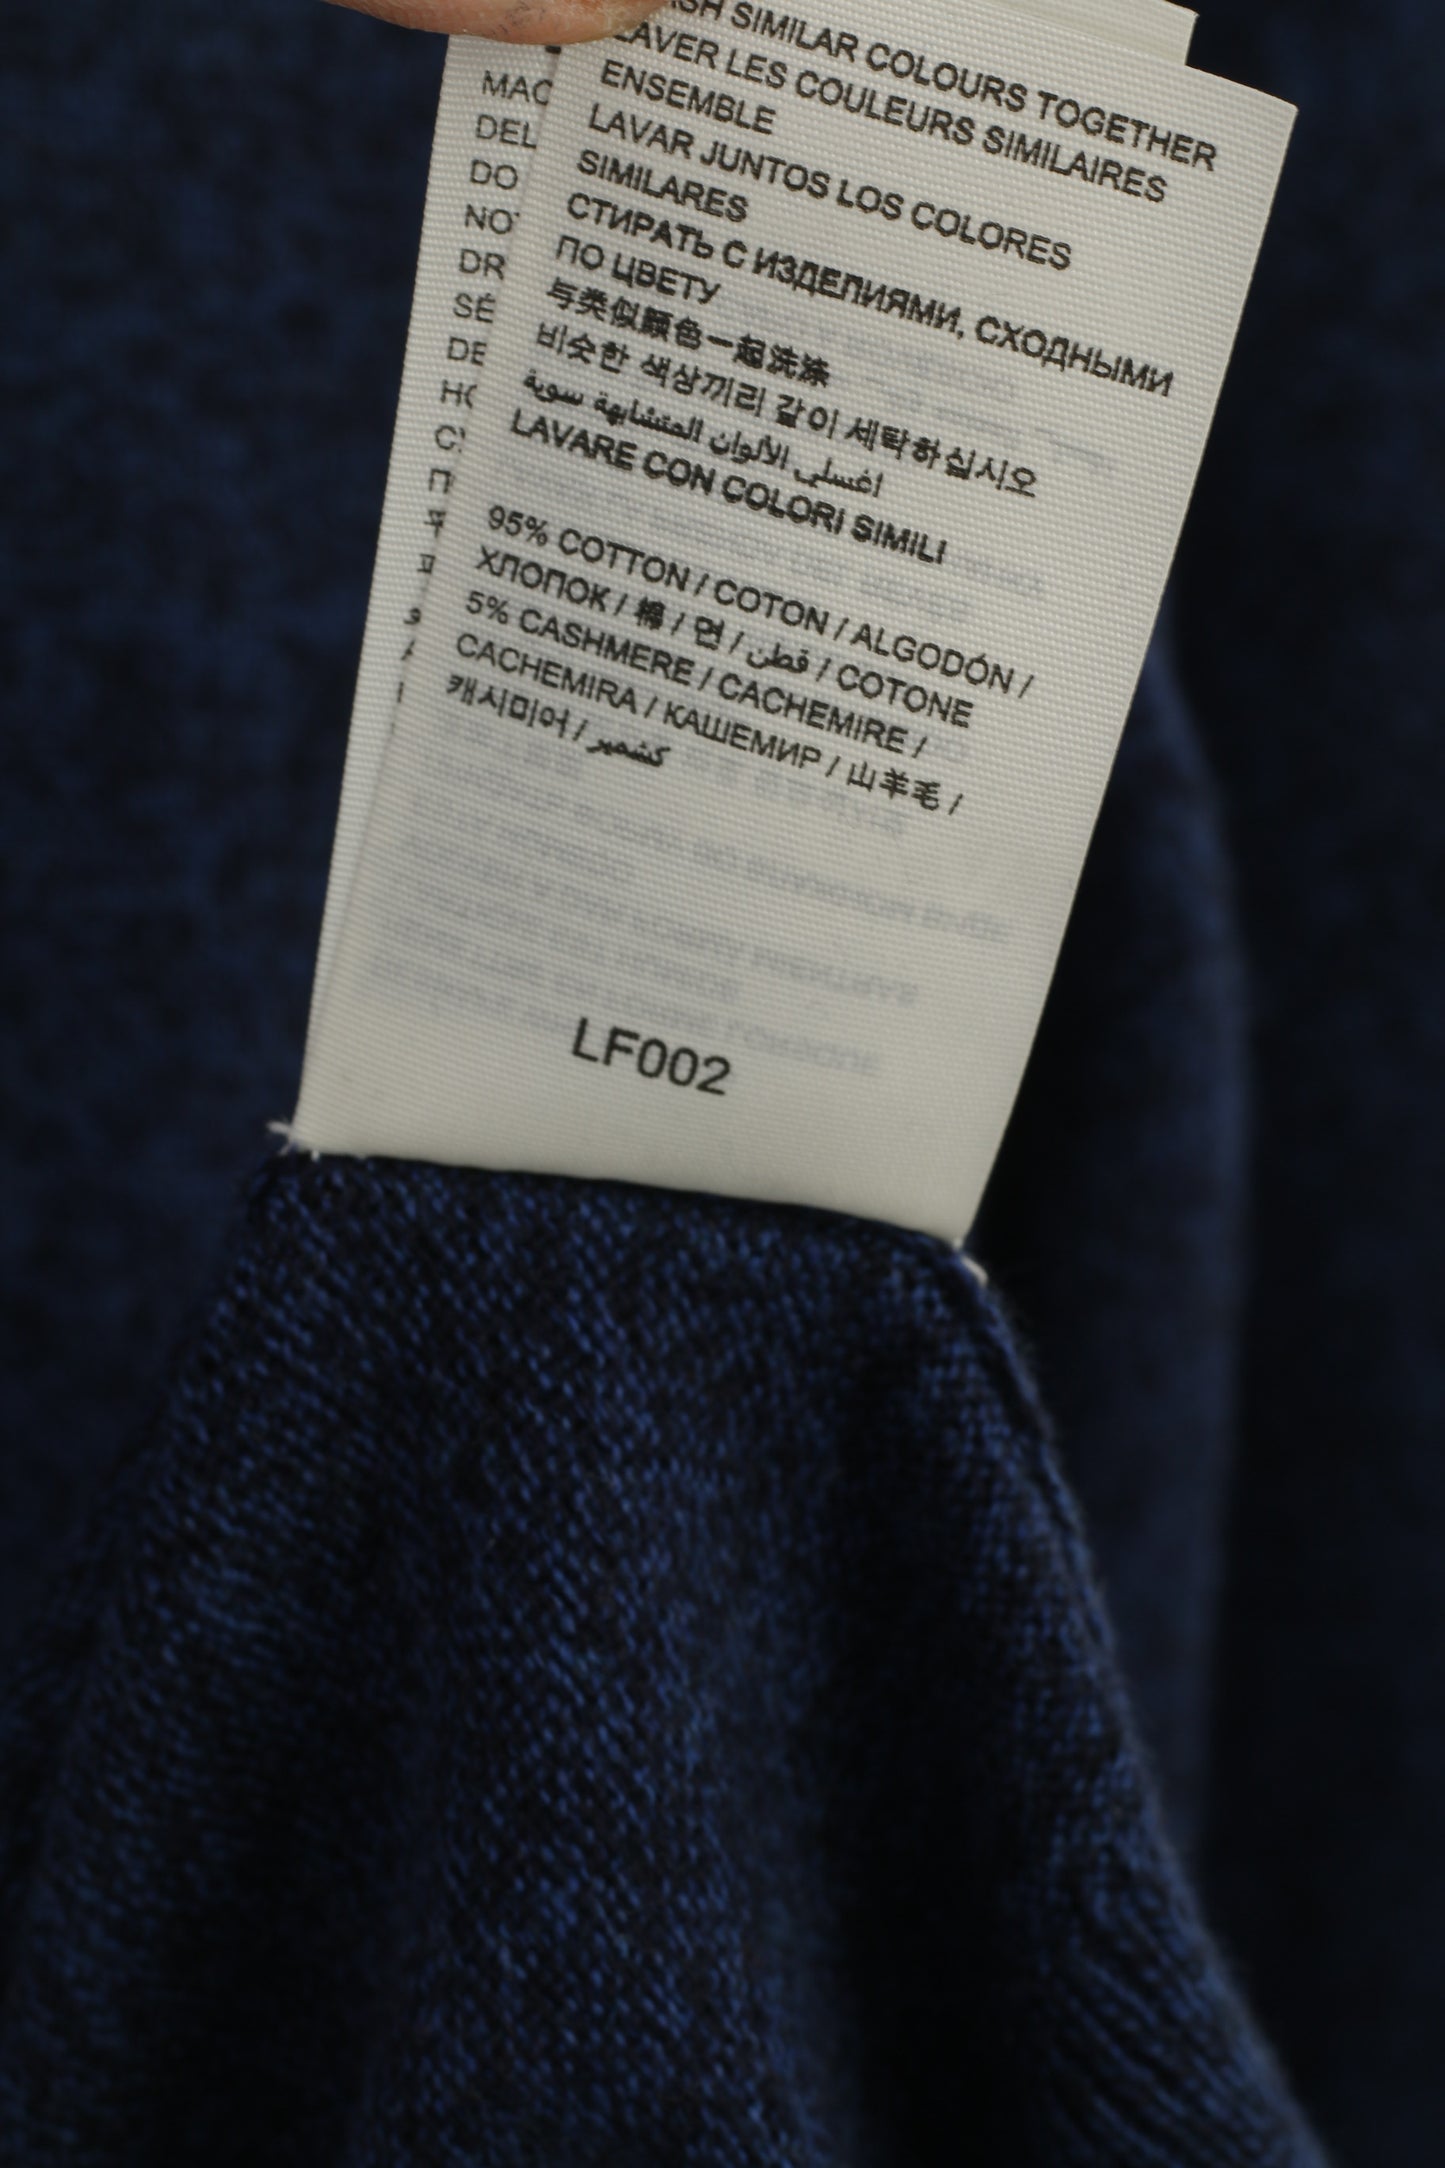 Maglione da uomo Superdry in misto cotone misto cashmere blu con scollo a V morbido maglione vintage